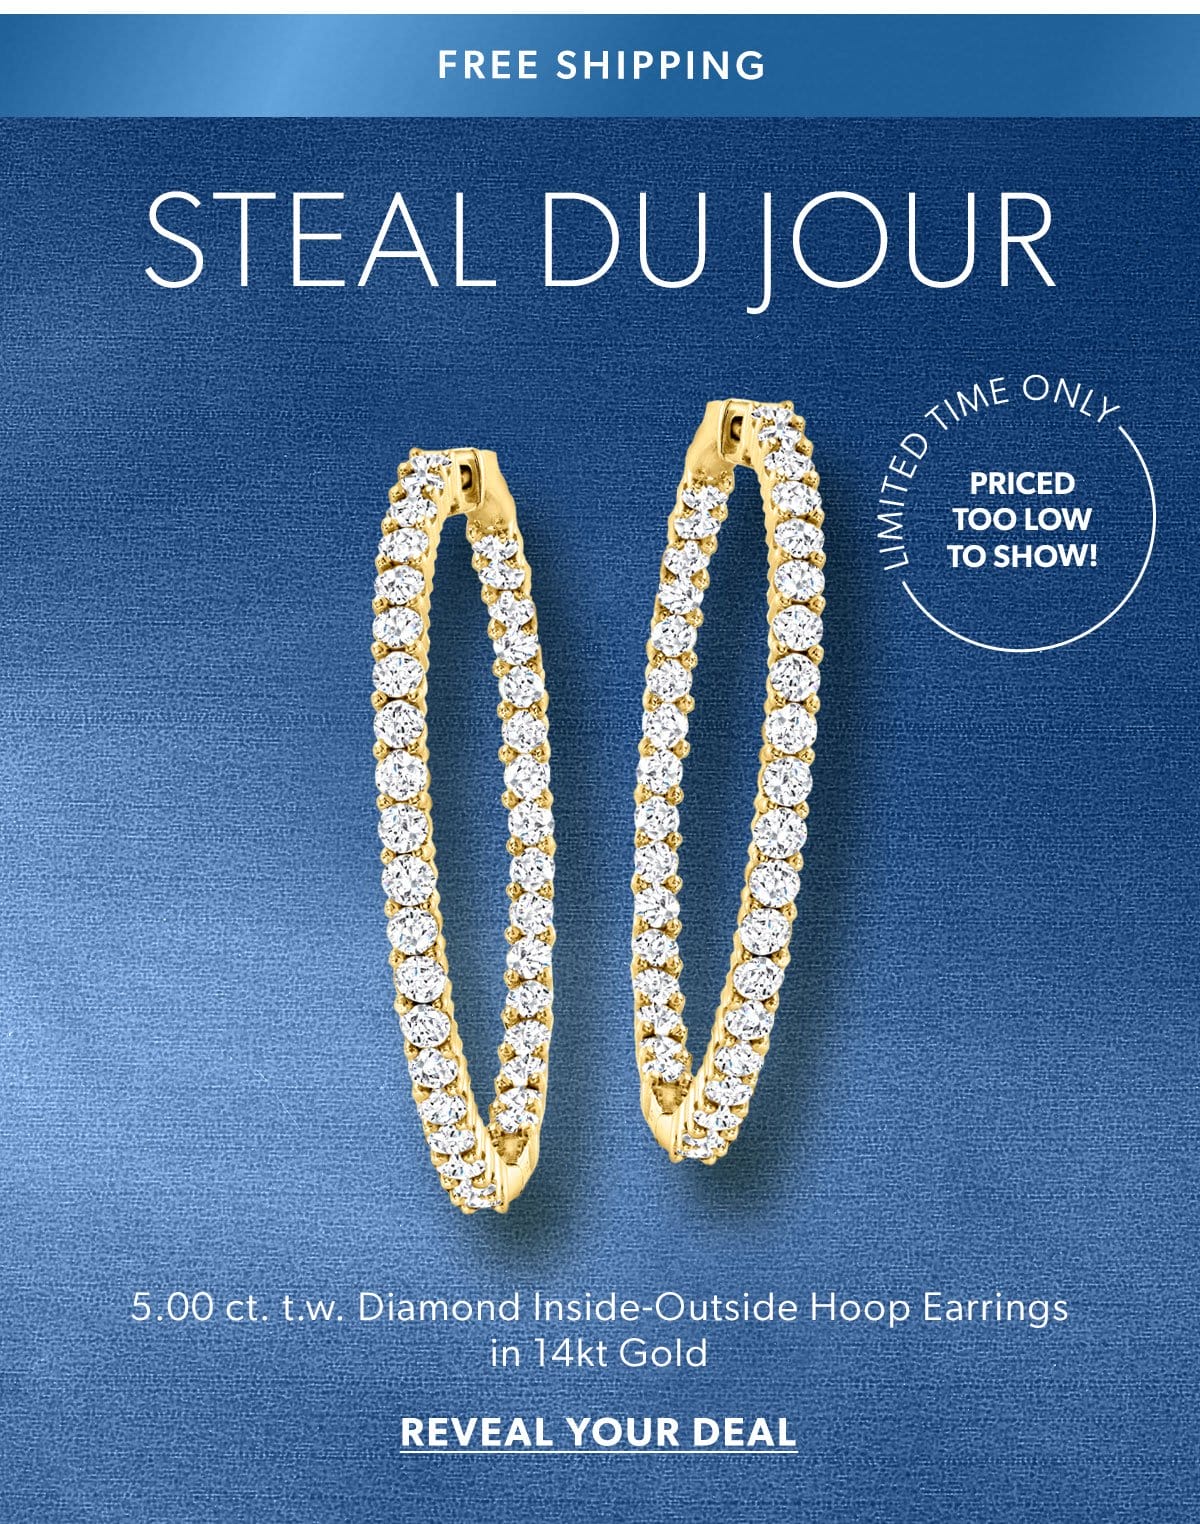 SDJ 5.00 ct. t.w. Diamond Inside-Outside Hoop Earrings in 14kt Gold. Reveal Your Deal